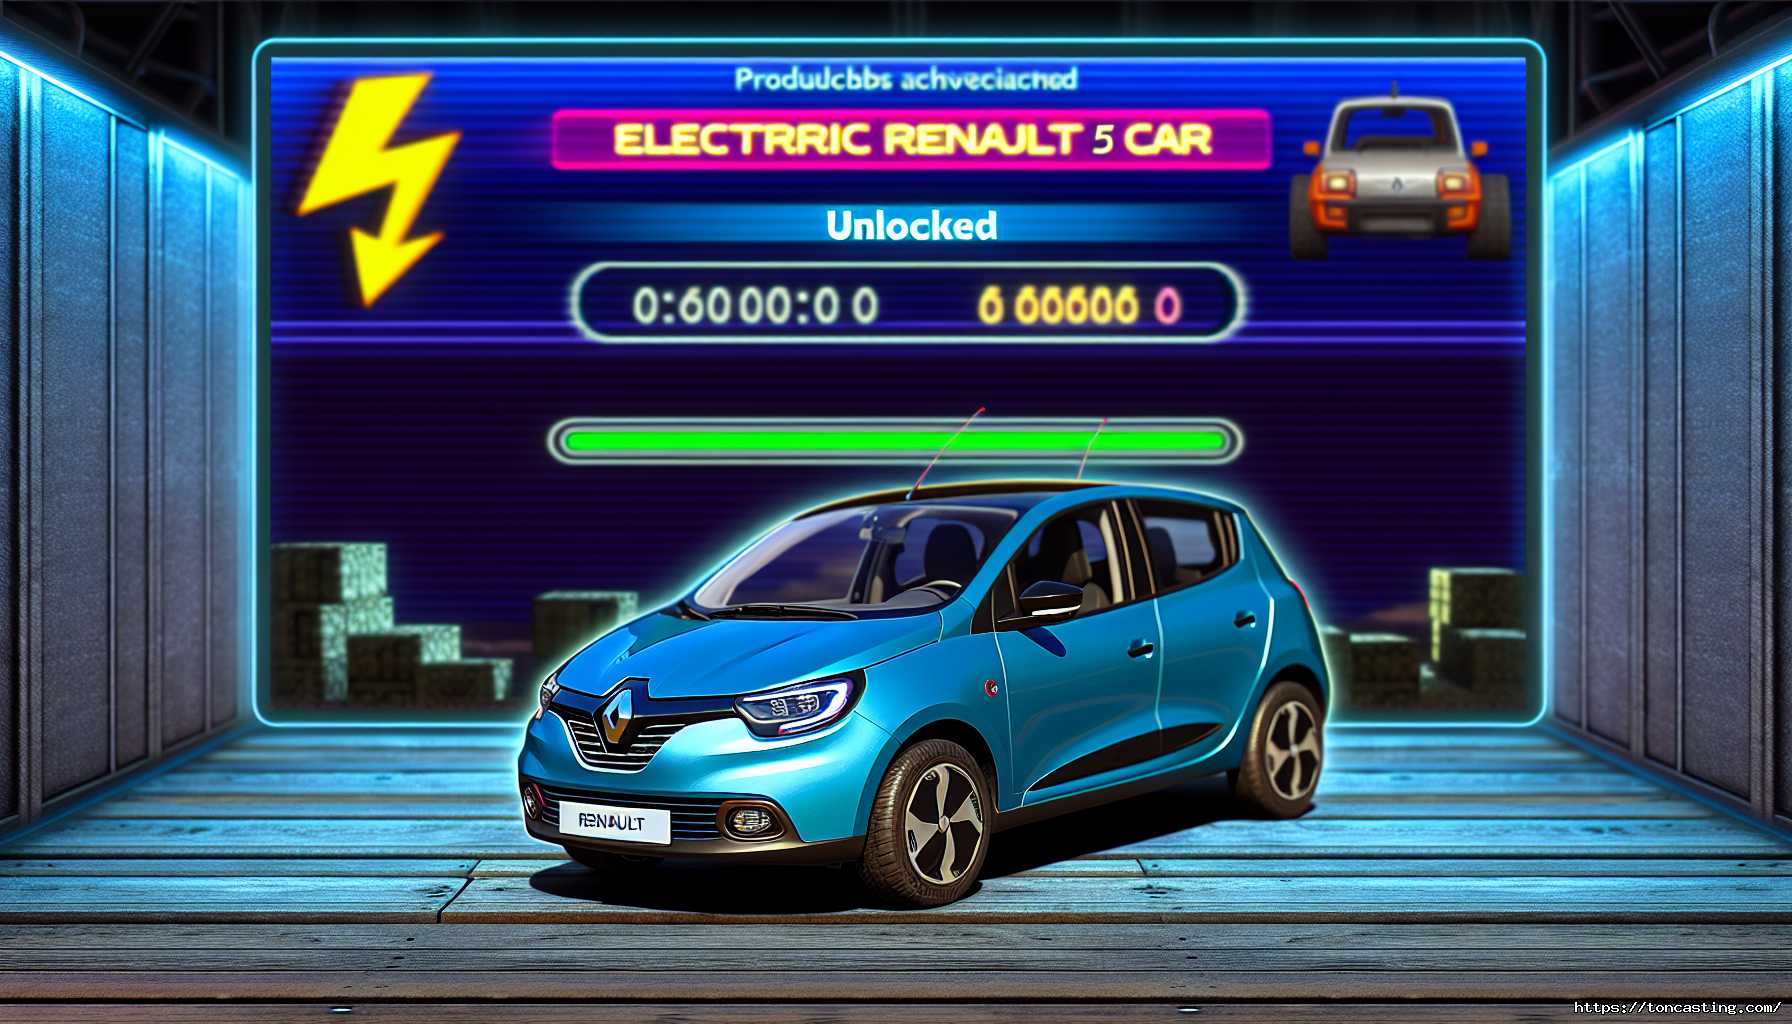 Débloquer gratuitement la Renault 5 Electrique dans vos jeux vidéo favoris : Fortnite, Minecraft, Roblox, et plus